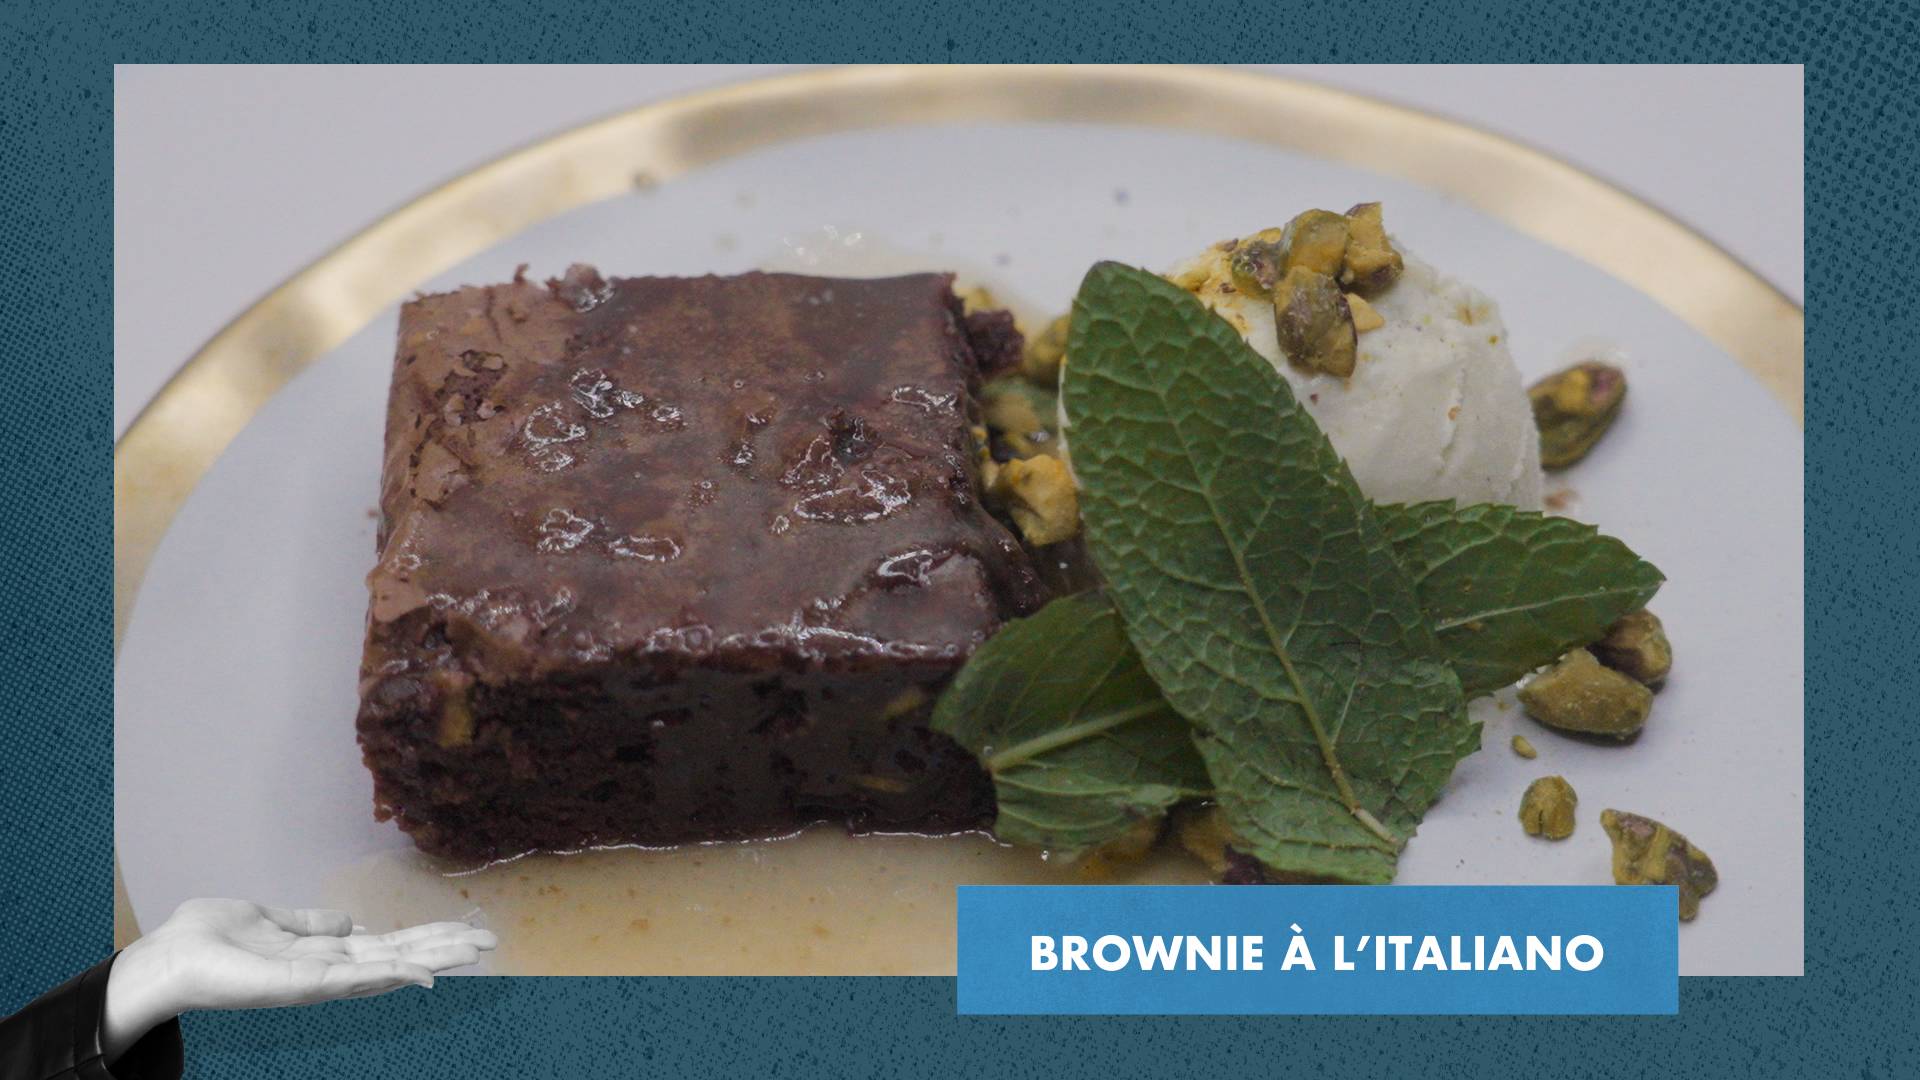 Brownie à l’italiano